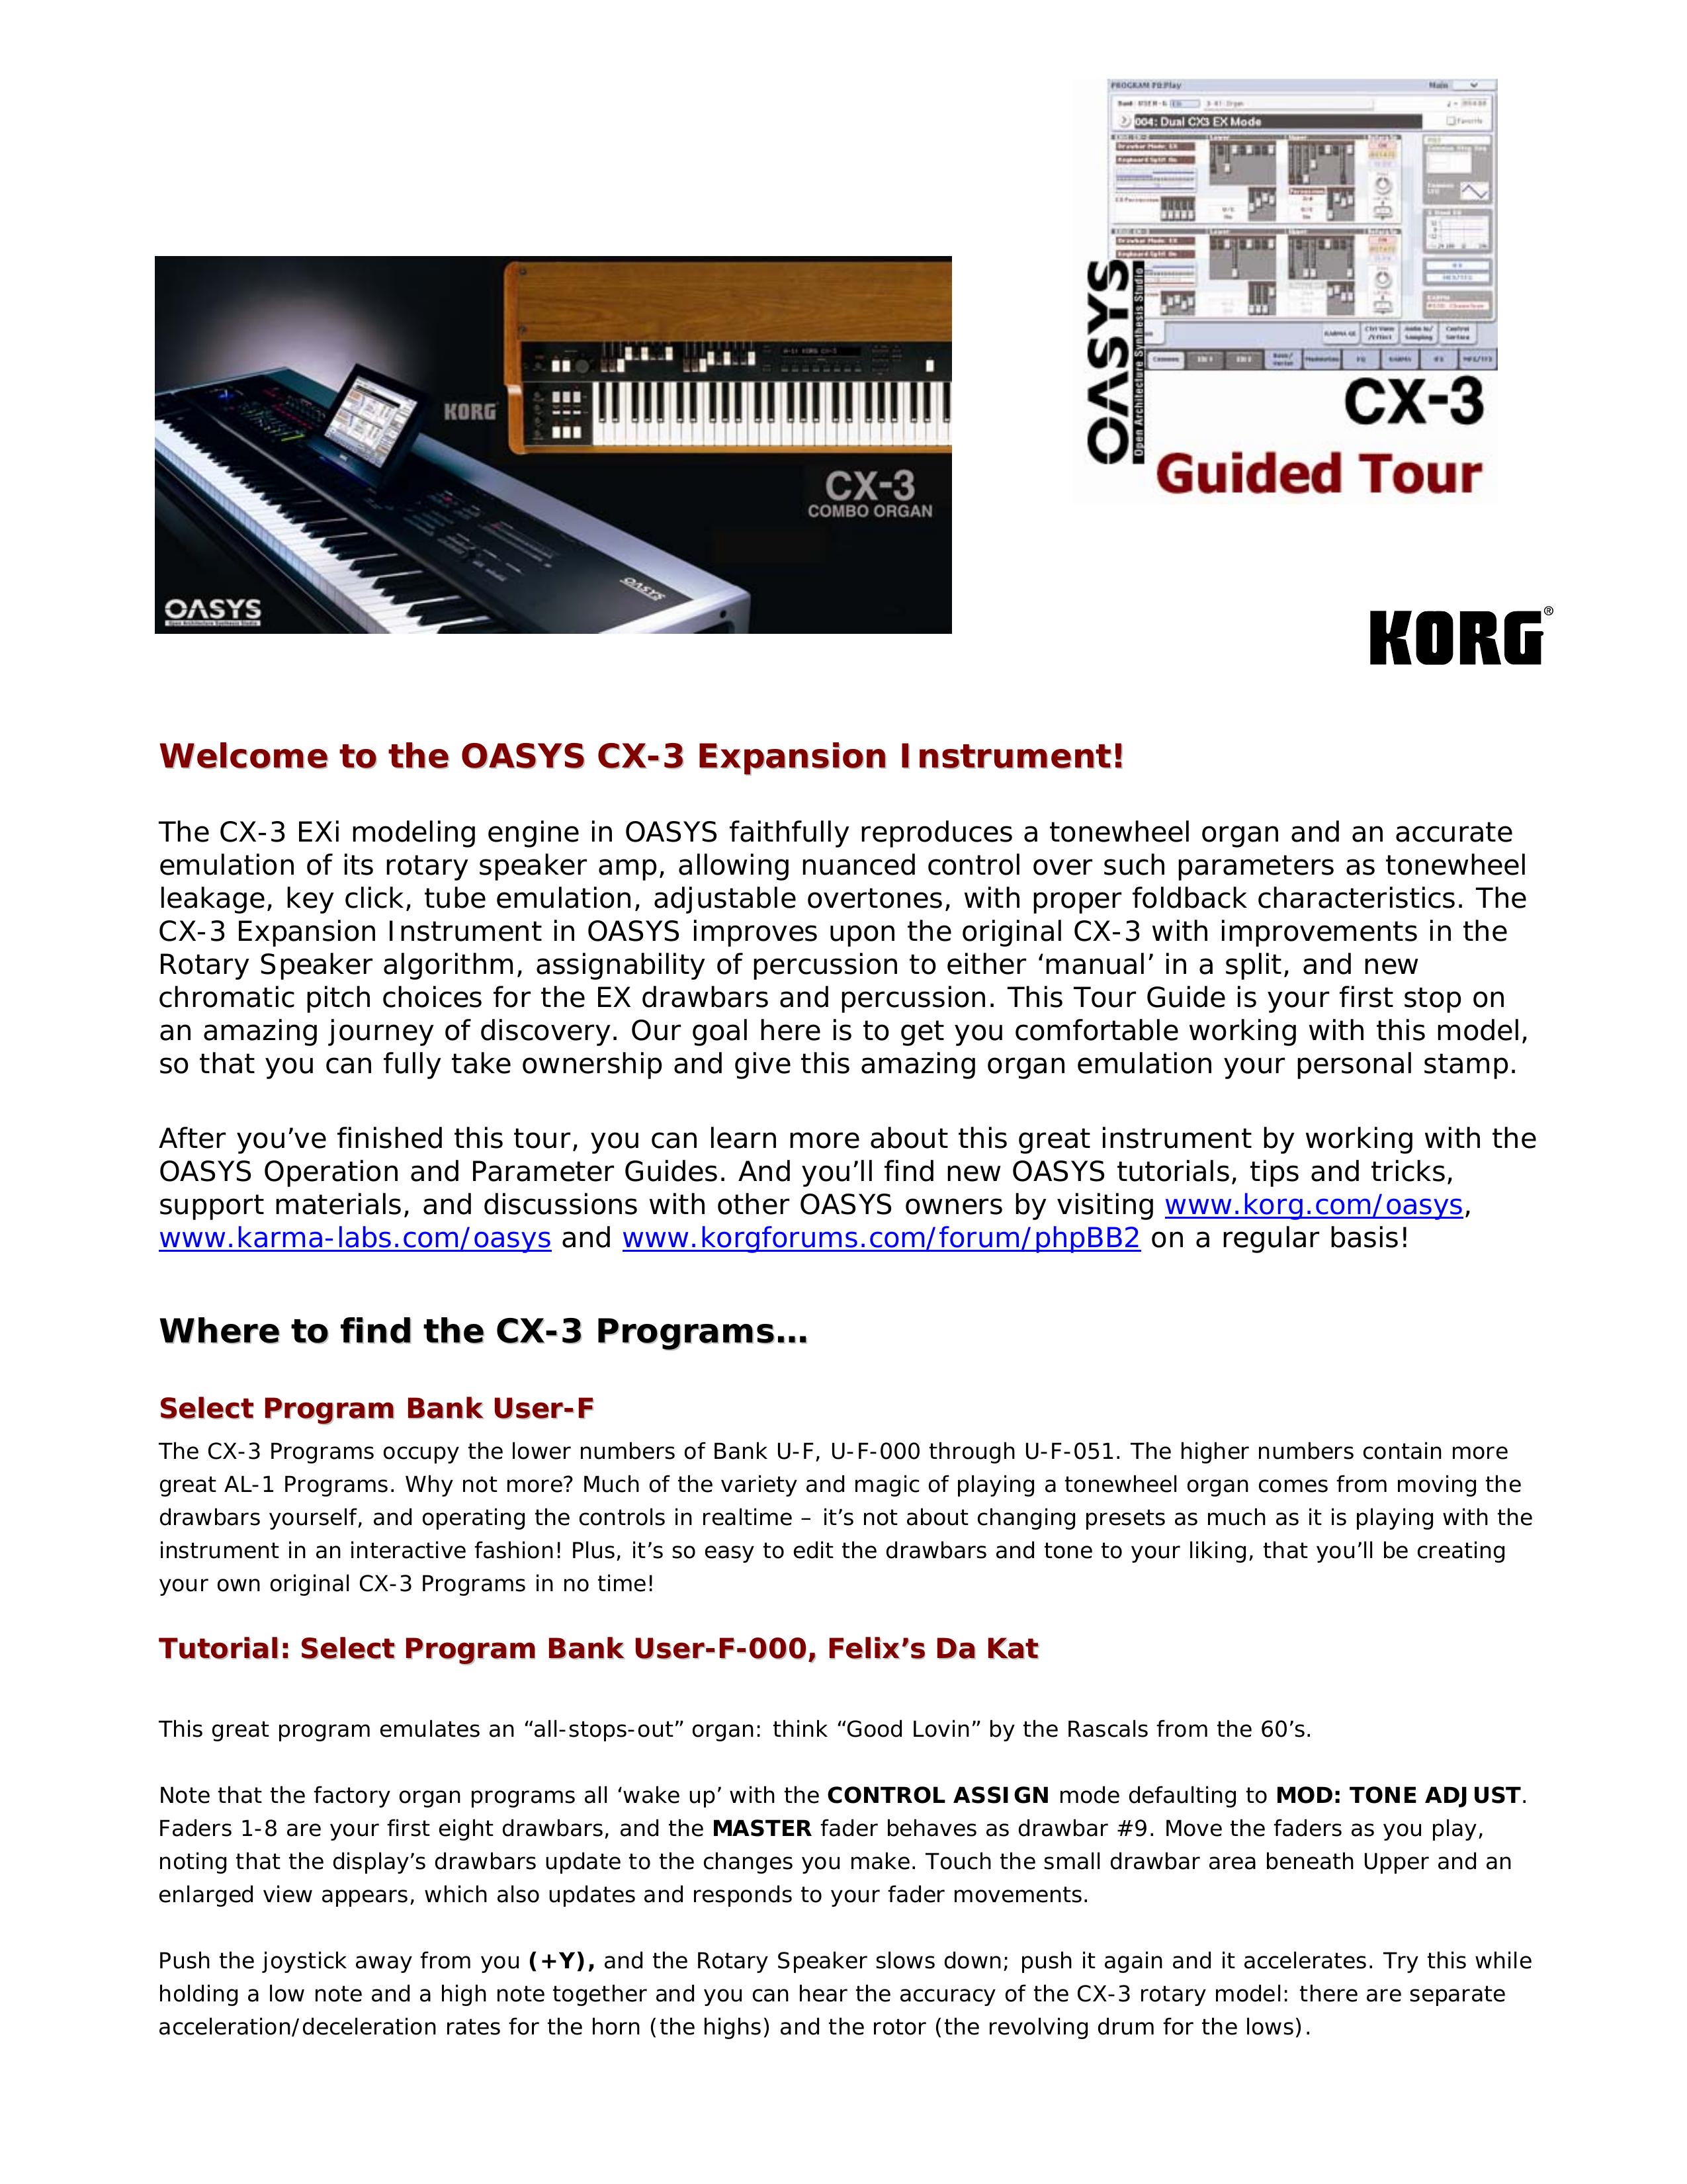 Korg CX-3 Electronic Keyboard User Manual